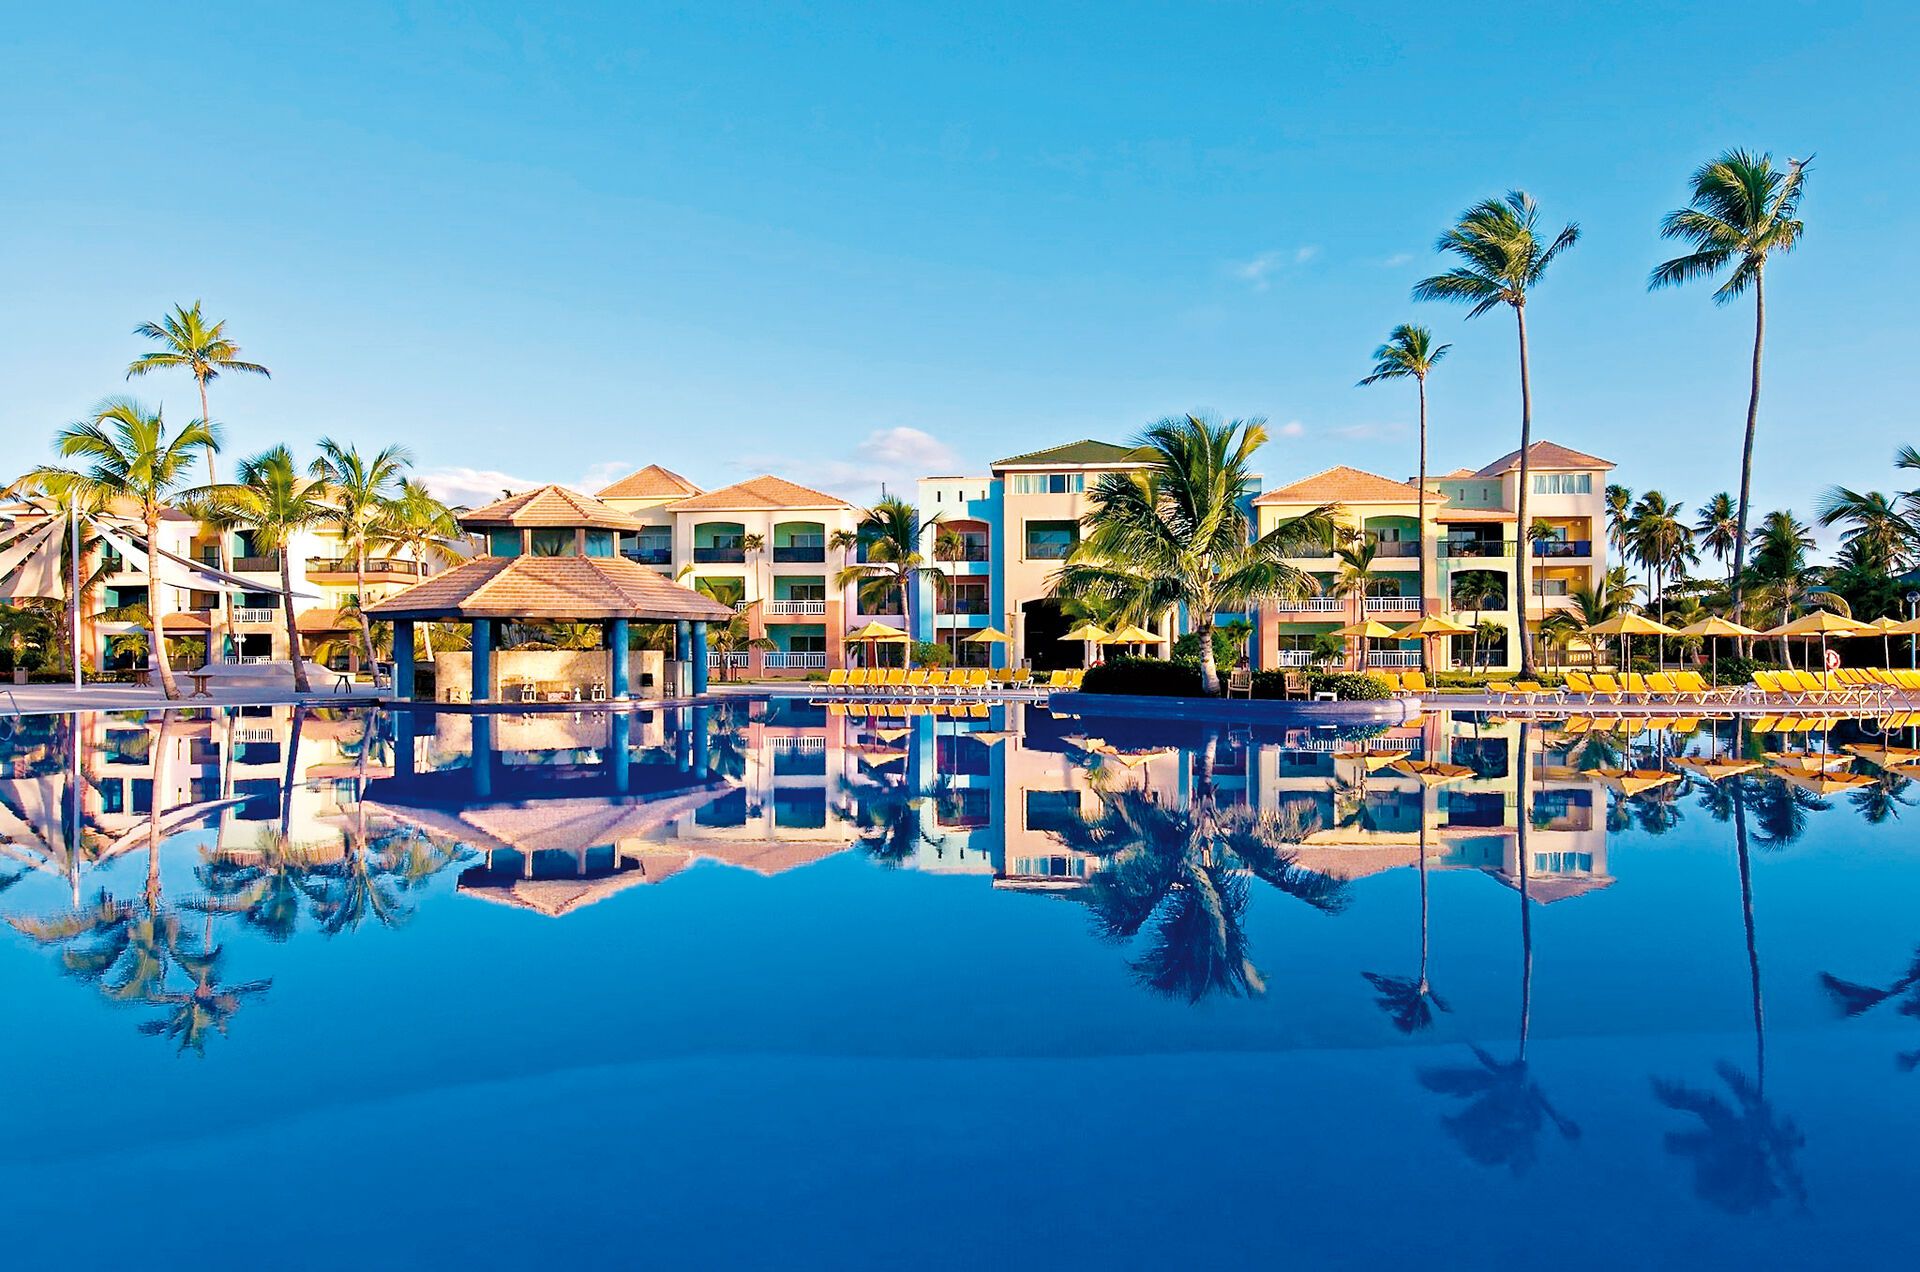 République Dominicaine - Punta Cana - Hôtel Ocean Blue Sand 5*